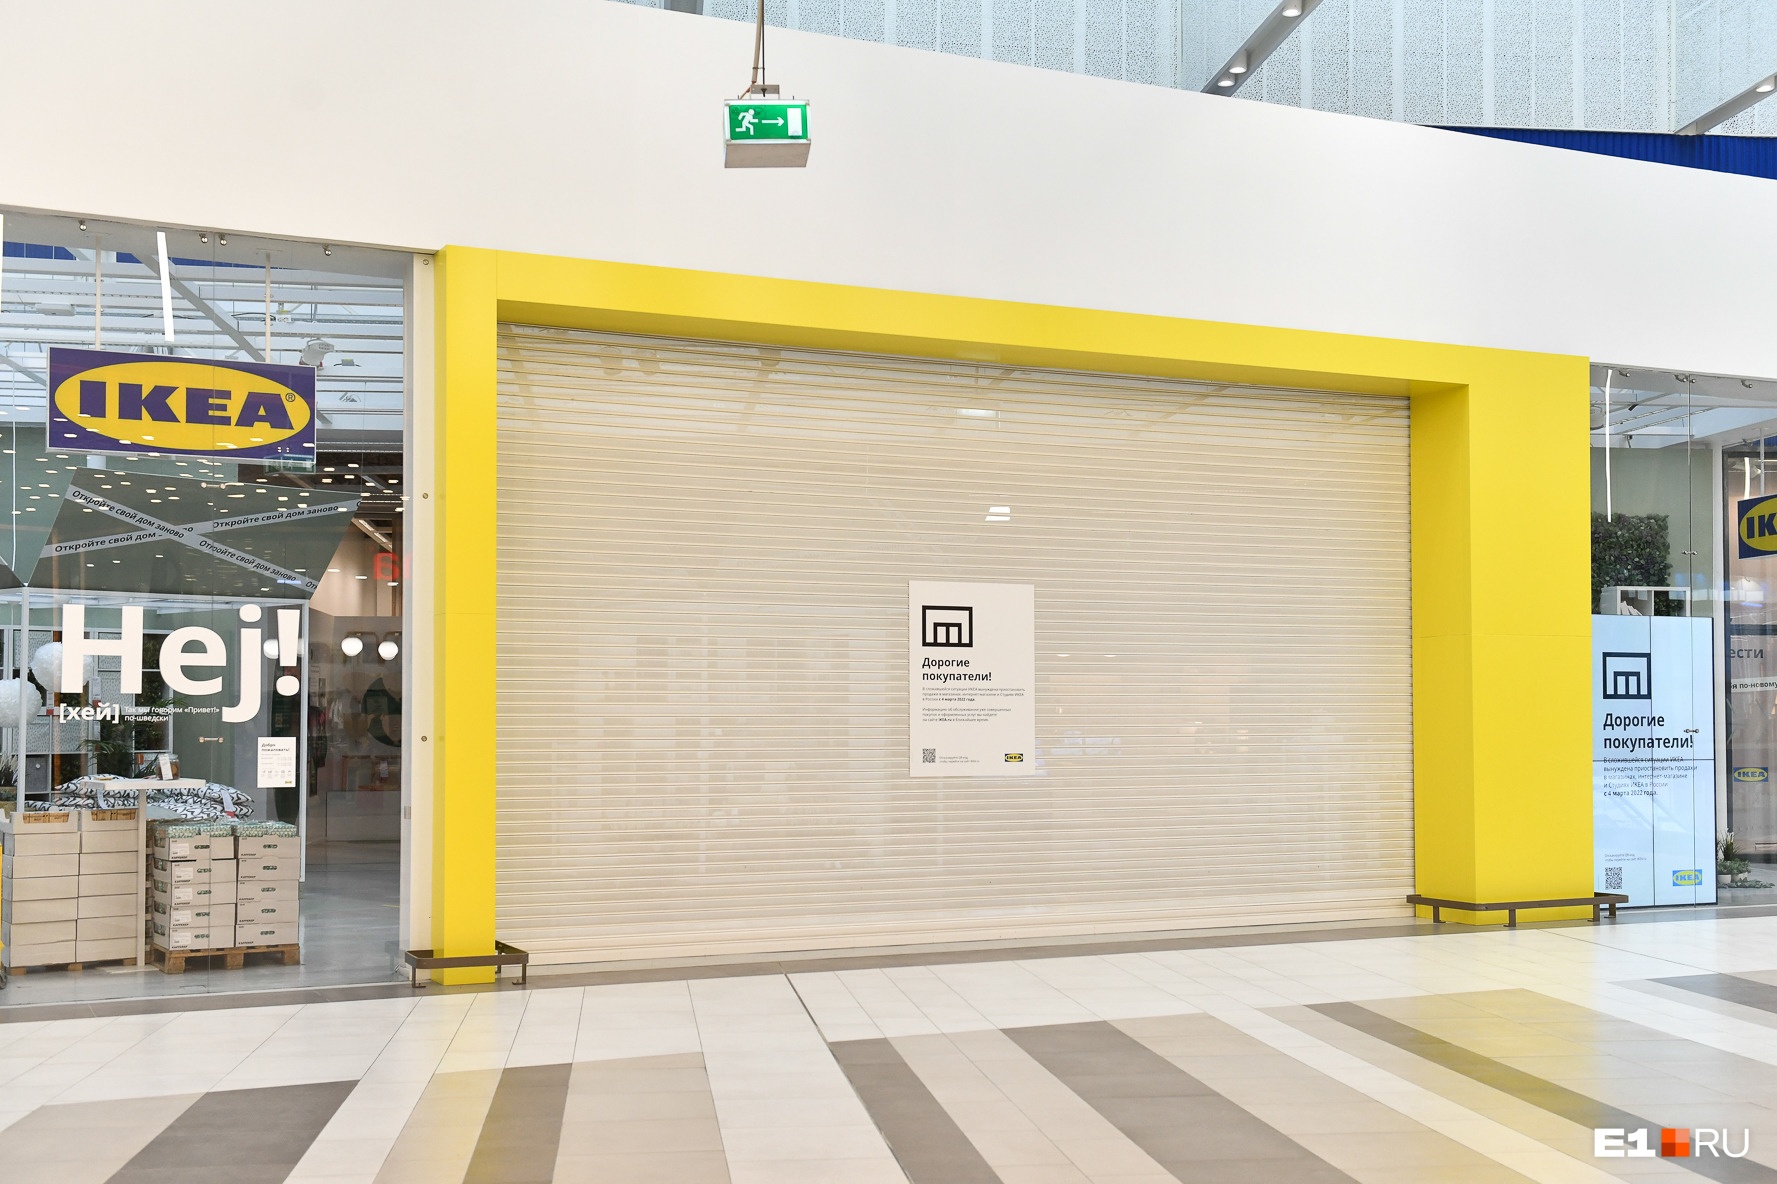 Сам магазин закрыт еще с 3 марта. Признавайтесь, будете скучать по IKEA?